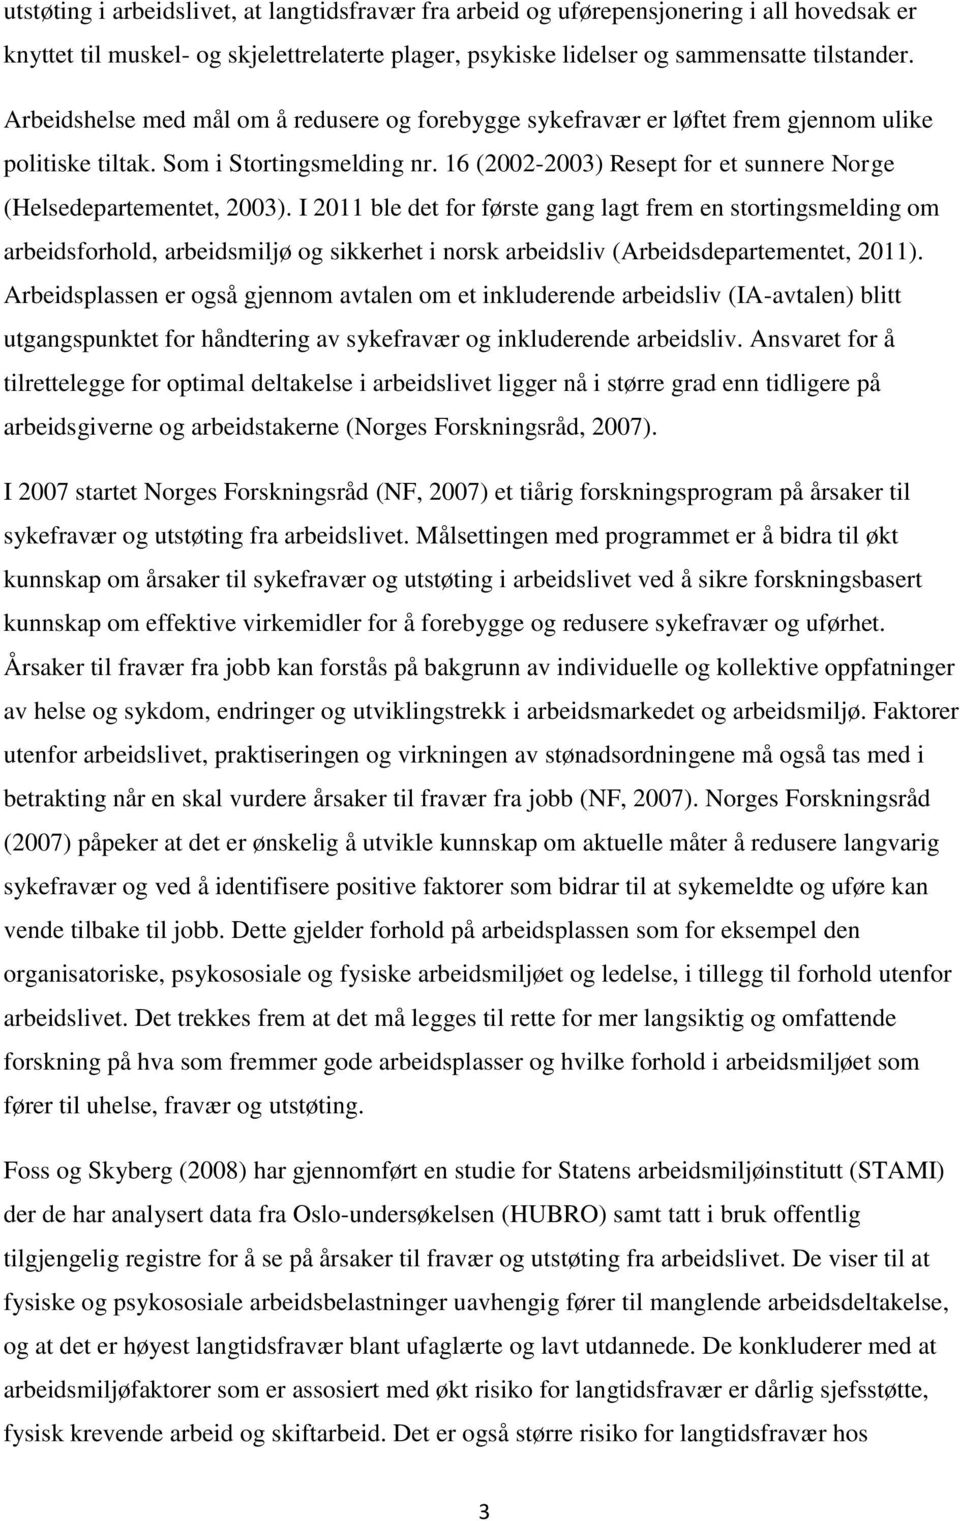 16 (2002-2003) Resept for et sunnere Norge (Helsedepartementet, 2003).